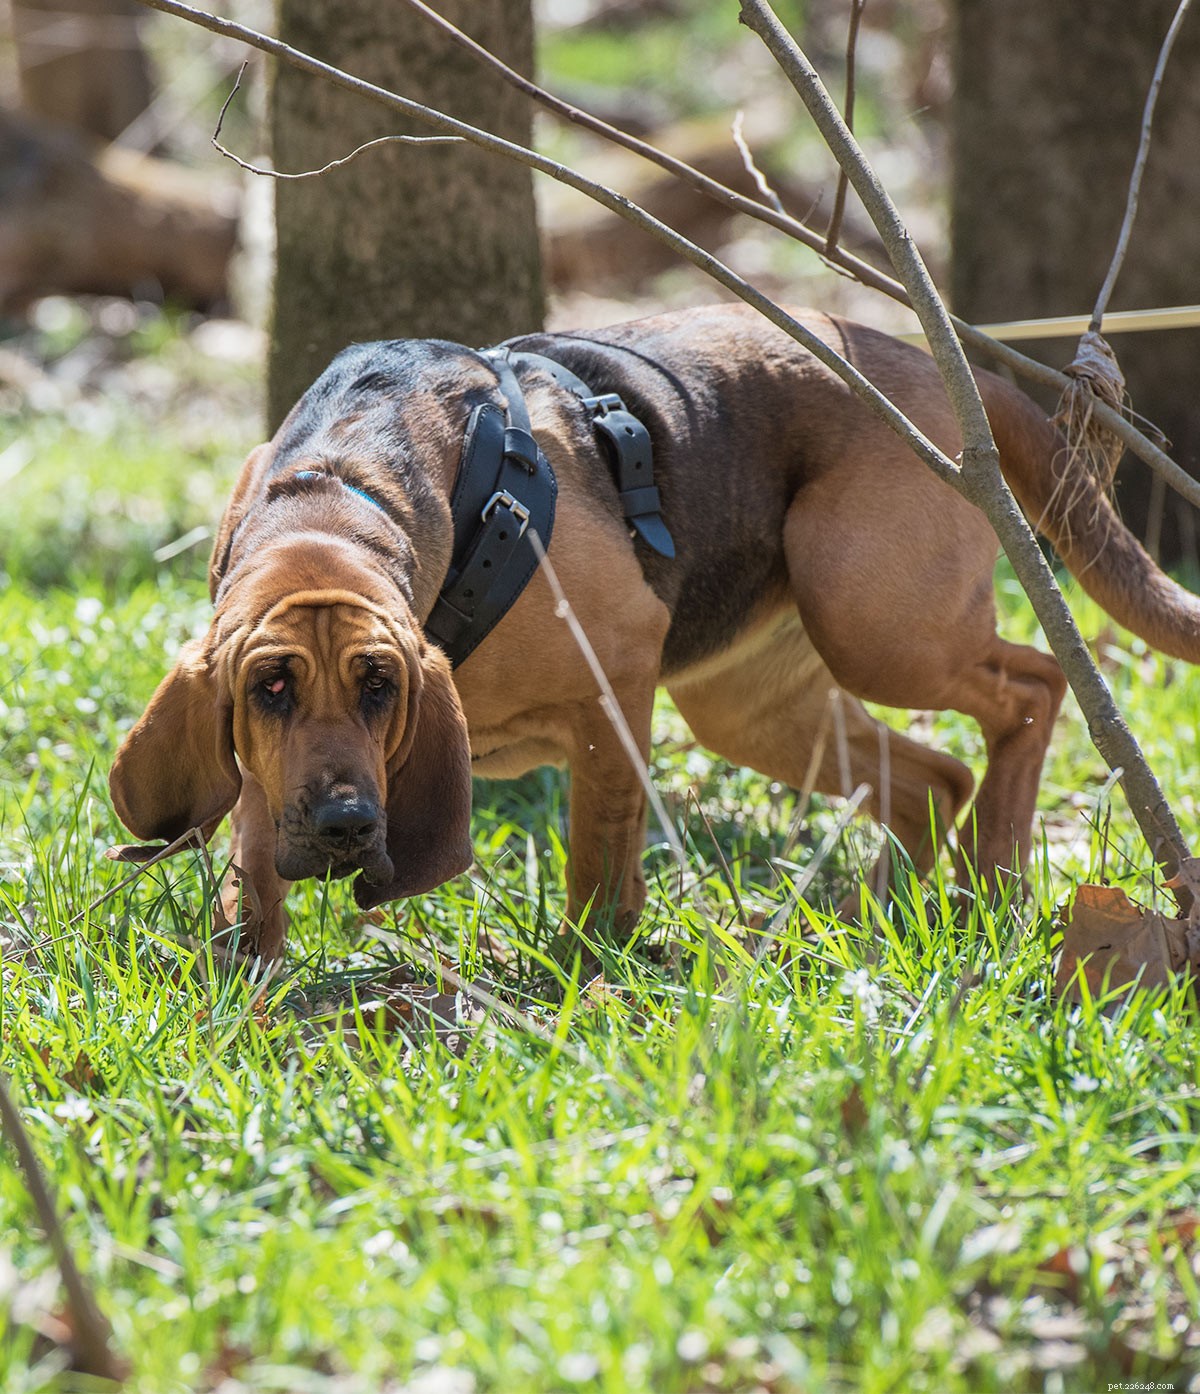 Bloodhound Dog Breed Center – Leer hun voor- en nadelen kennen